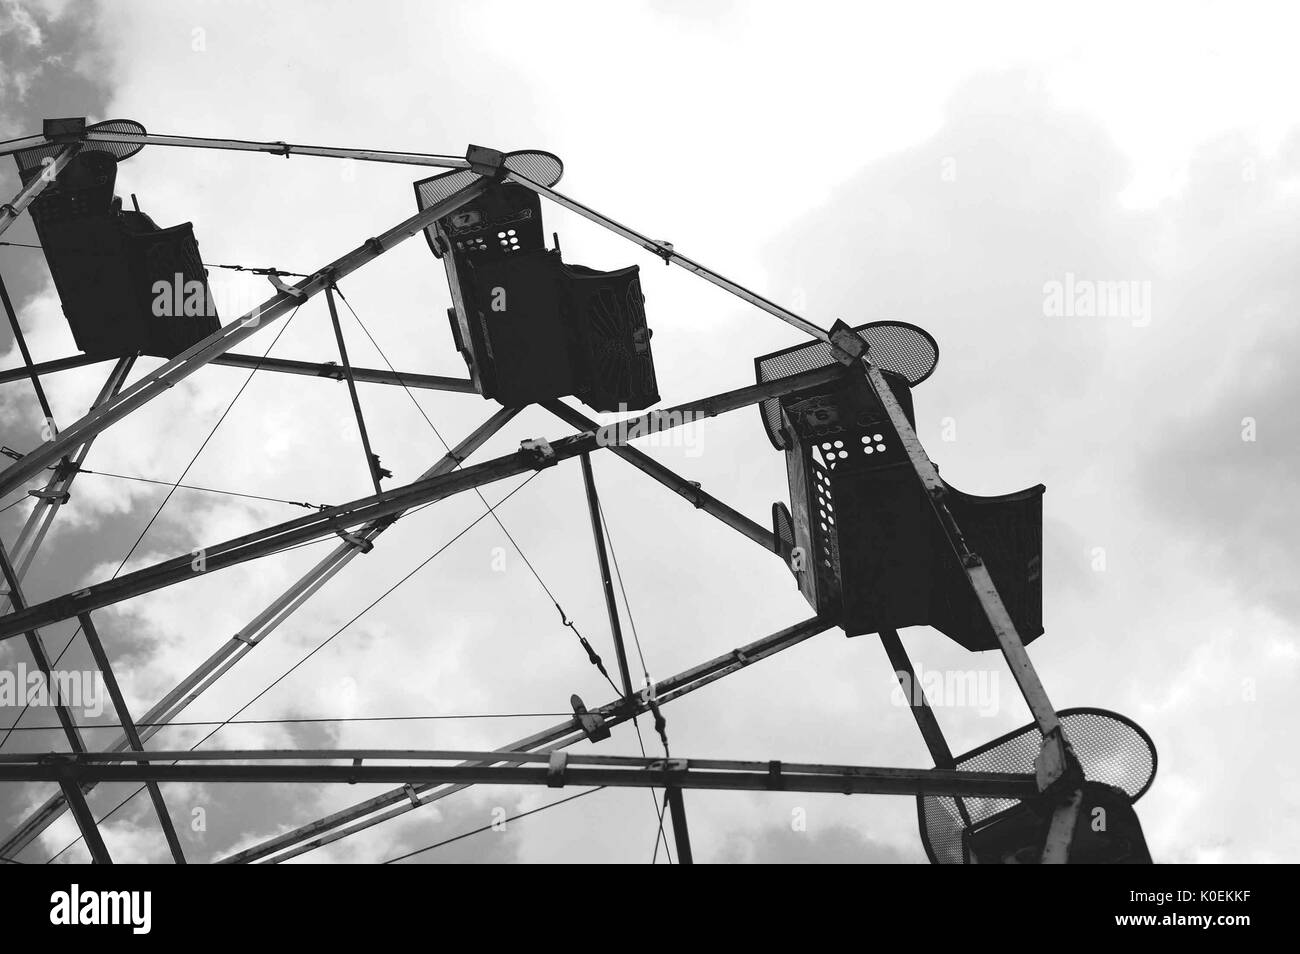 Eine Froschperspektive von Sitzen von der still und leer Riesenrad fahren gegen eine trübe Hintergrund während der Spring Fair, einer studentischen Spring Carnival, an der Johns Hopkins University, Baltimore, Maryland. April, 2015. Mit freundlicher Genehmigung von Eric Chen. Stockfoto